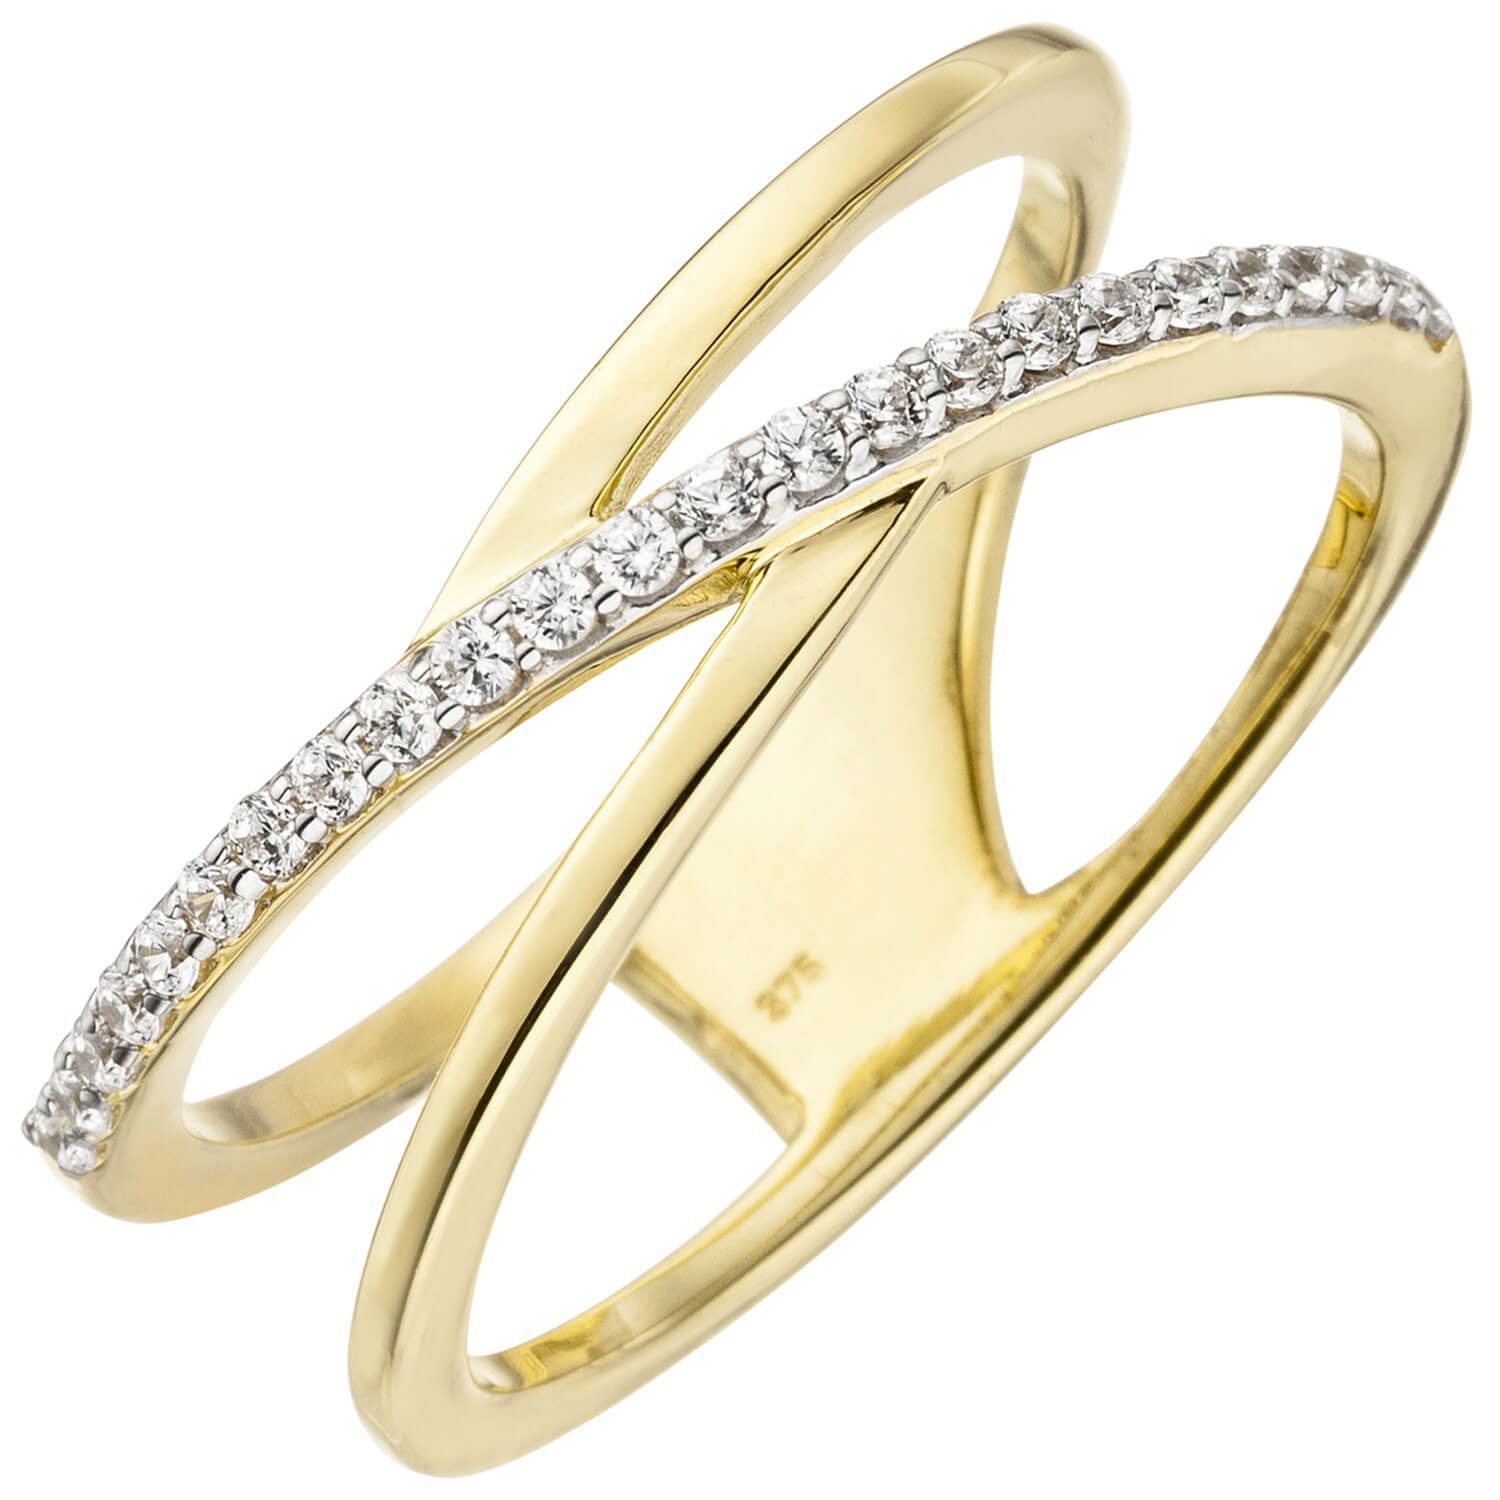 Schmuck Krone Goldring Eleganter Ring 2-reihig Zirkonia und 375 Gelbgold, Gold 375